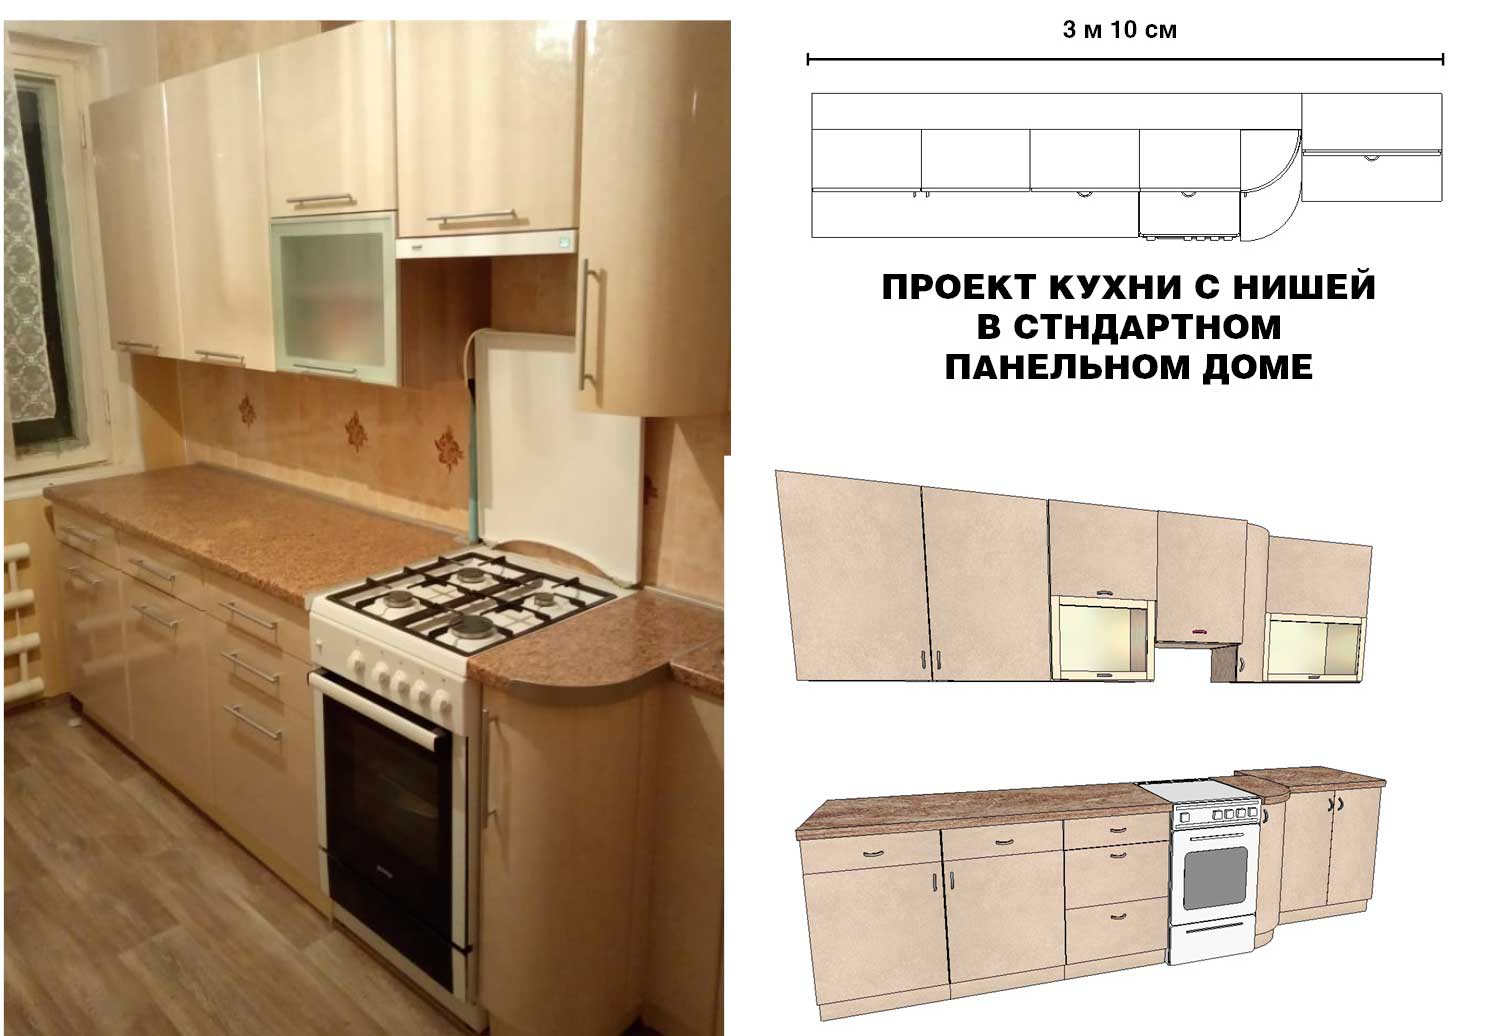 Прямая кухня с нишей в панельном доме стандартной планировки